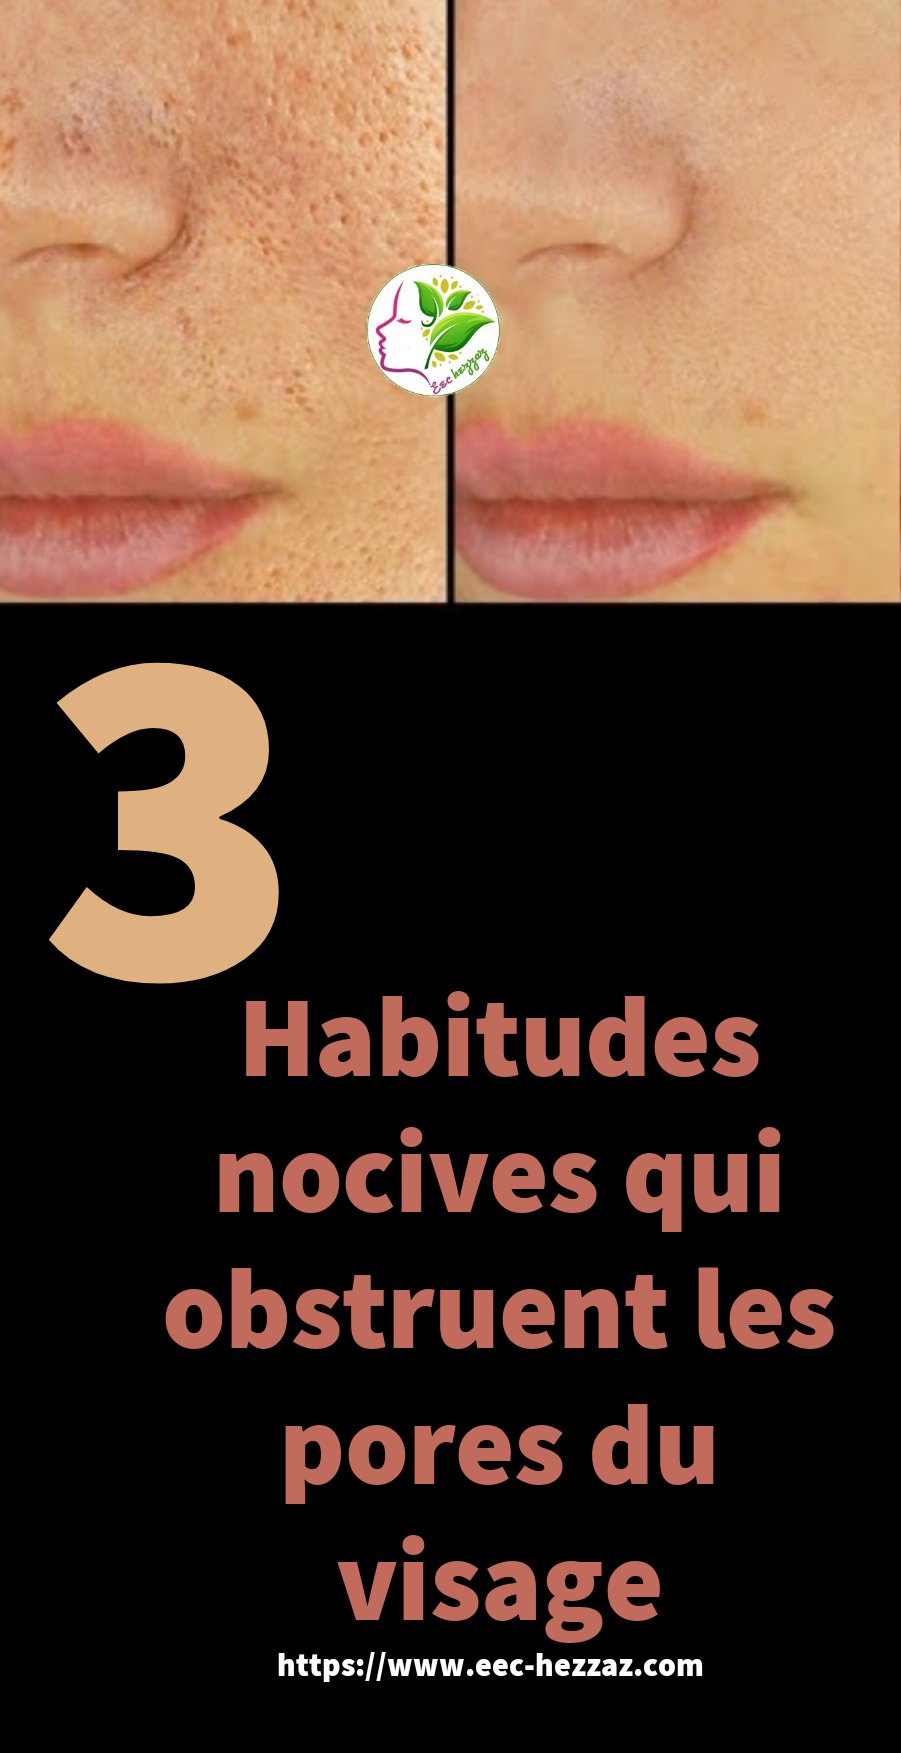 3 Habitudes nocives qui obstruent les pores du visage